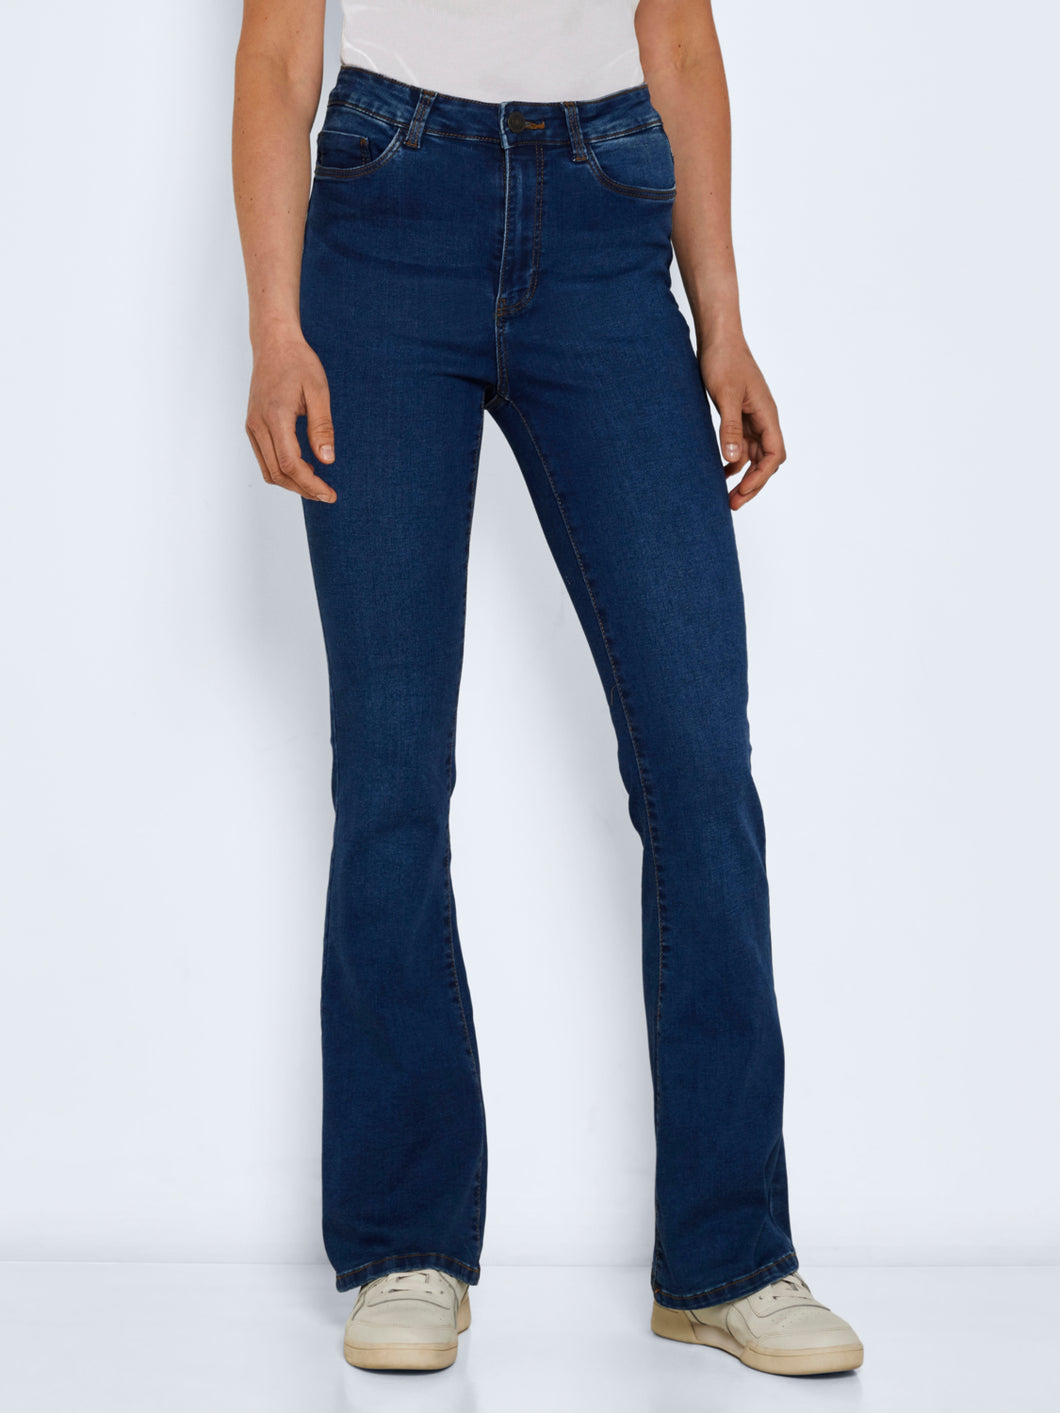 NMSALLIE Jeans - Medium Blue Denim